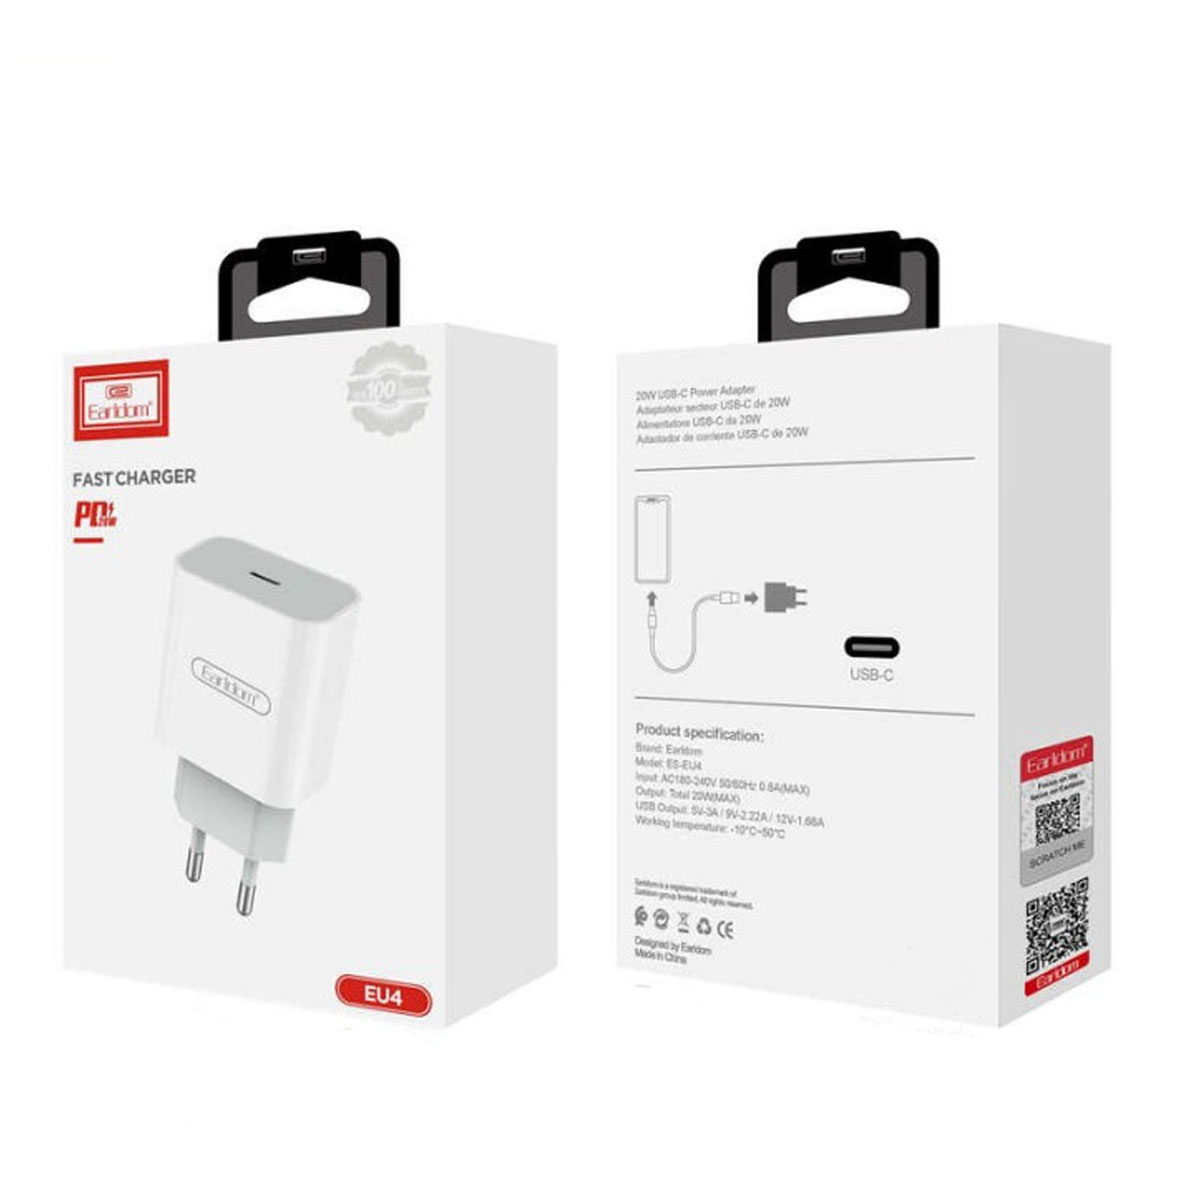 СЗУ (Сетевое зарядное устройство) EARLDOM ES-EU4 с кабелем USB Type C на Lightning 8 pin, 20W, 1 USB Type C, длина 1 метр, цвет белый